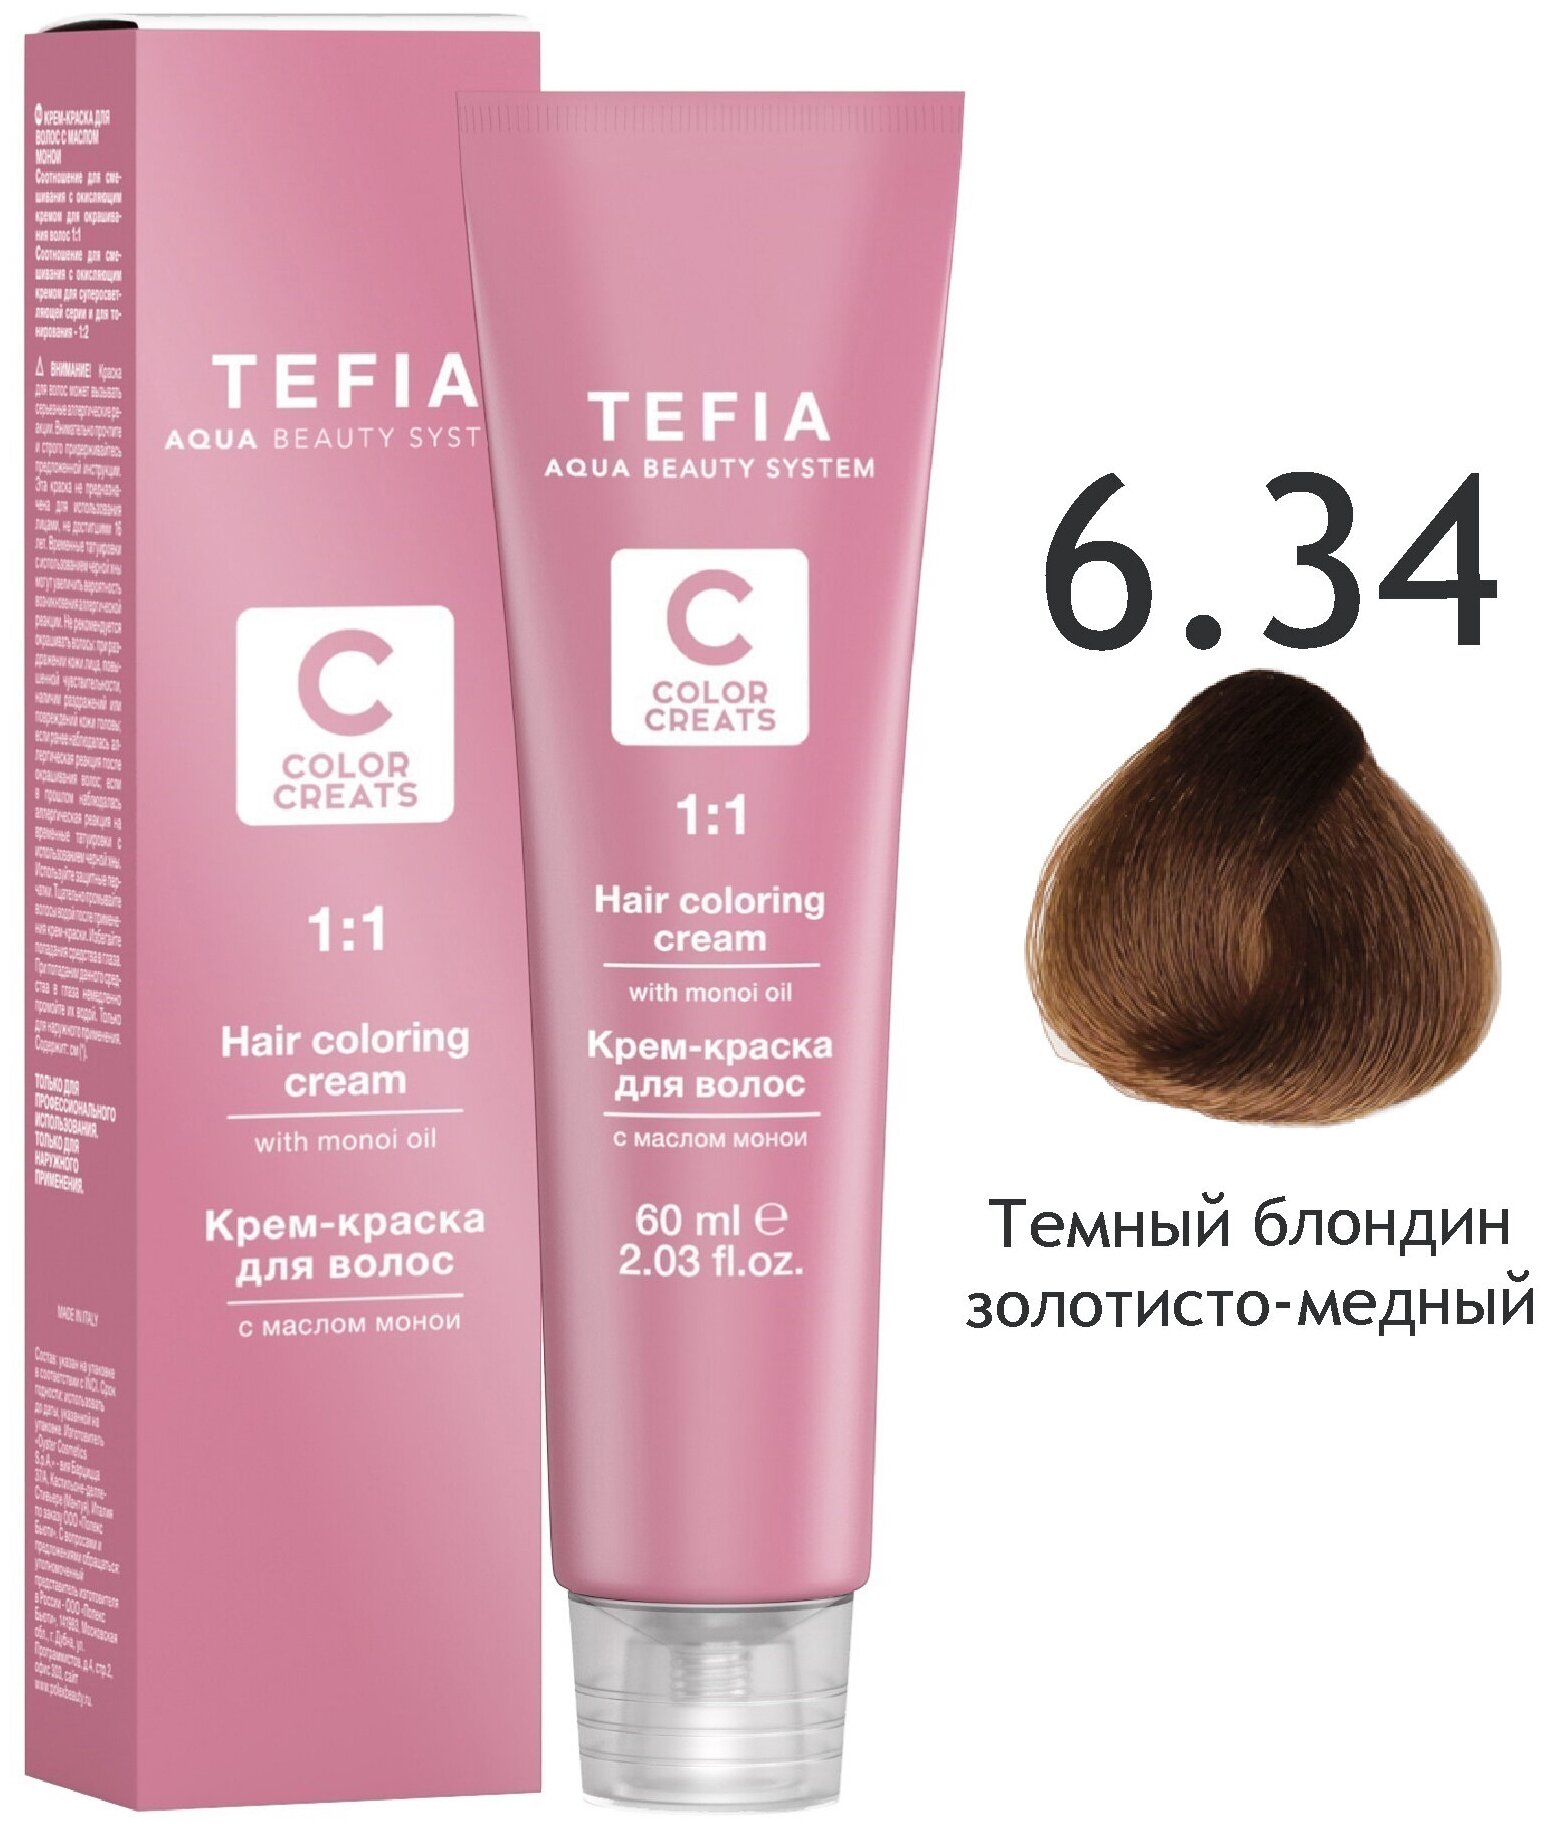 TEFIA ABS Крем-краска для волос с маслом монои, 60 мл 6.34 темный блондин золотисто-медный